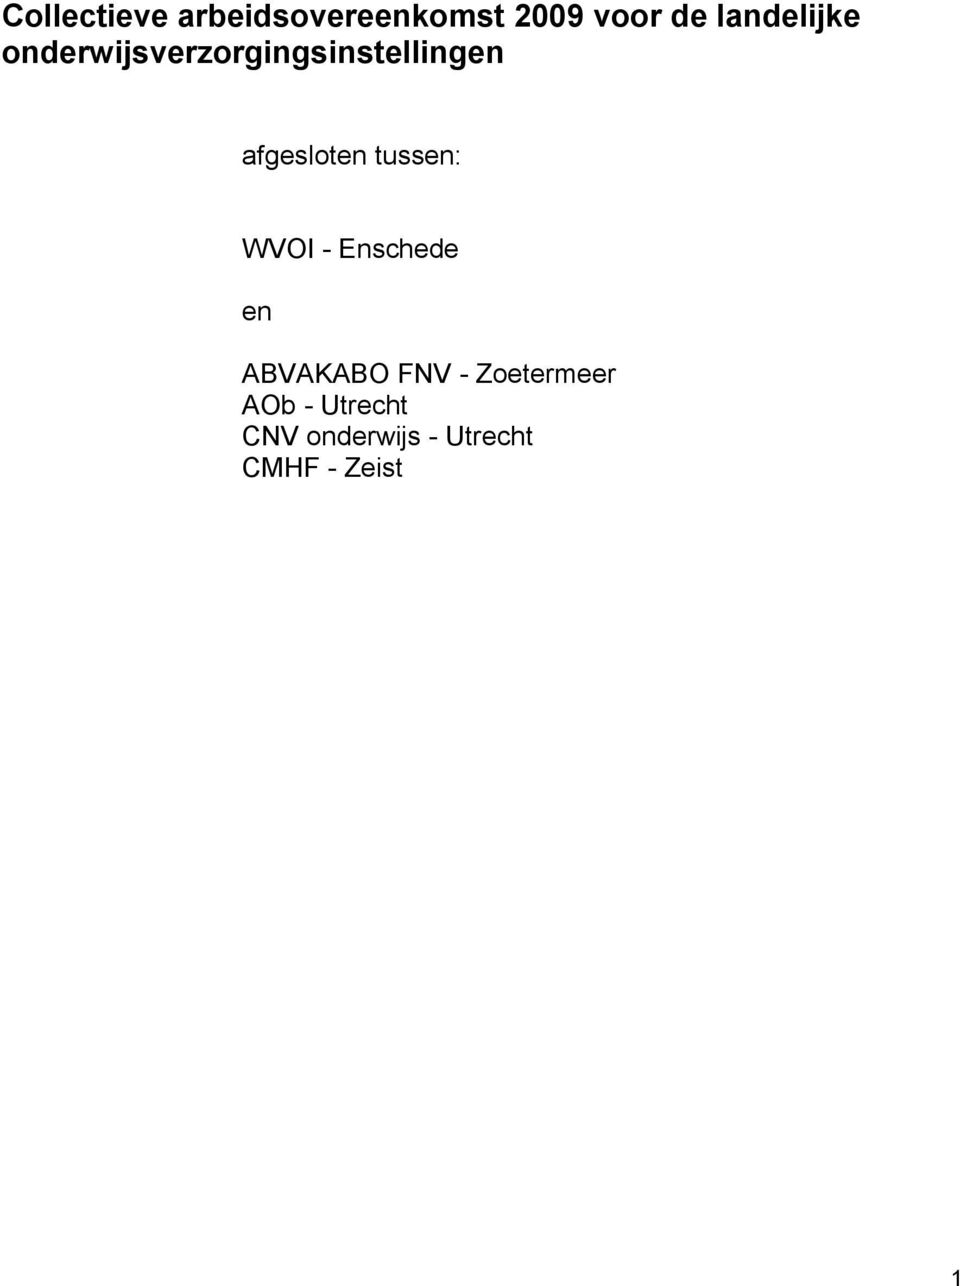 afgesloten tussen: WVOI - Enschede en ABVAKABO FNV